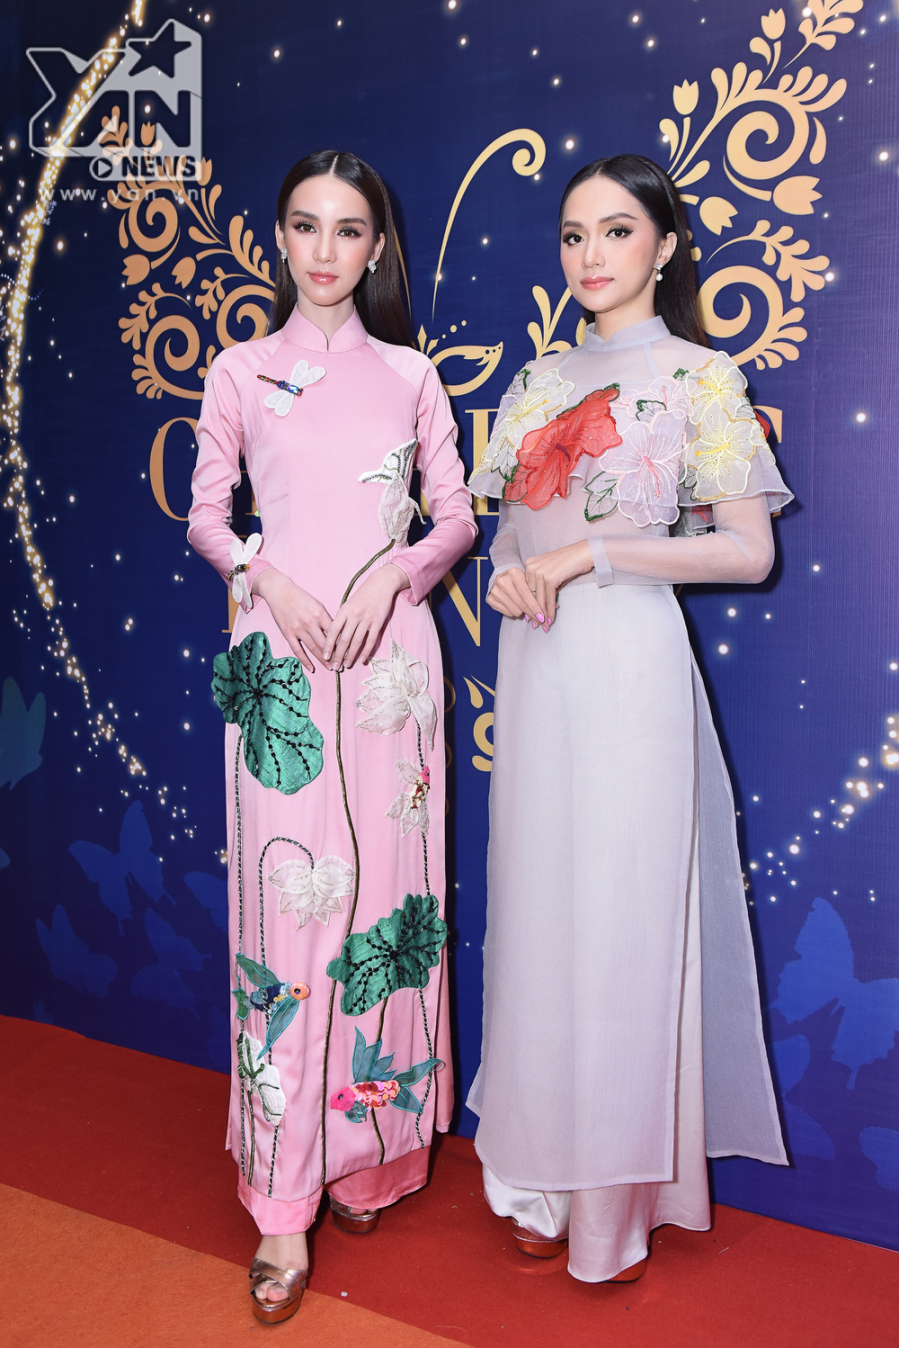 Trước đó, Hương Giang từng gây chú ý khi diện một thiết kế áo dài tương tự với màu tím nhạt trong chung kết The Tiffany - Chinh phục hoàn mỹ Việt Nam.    